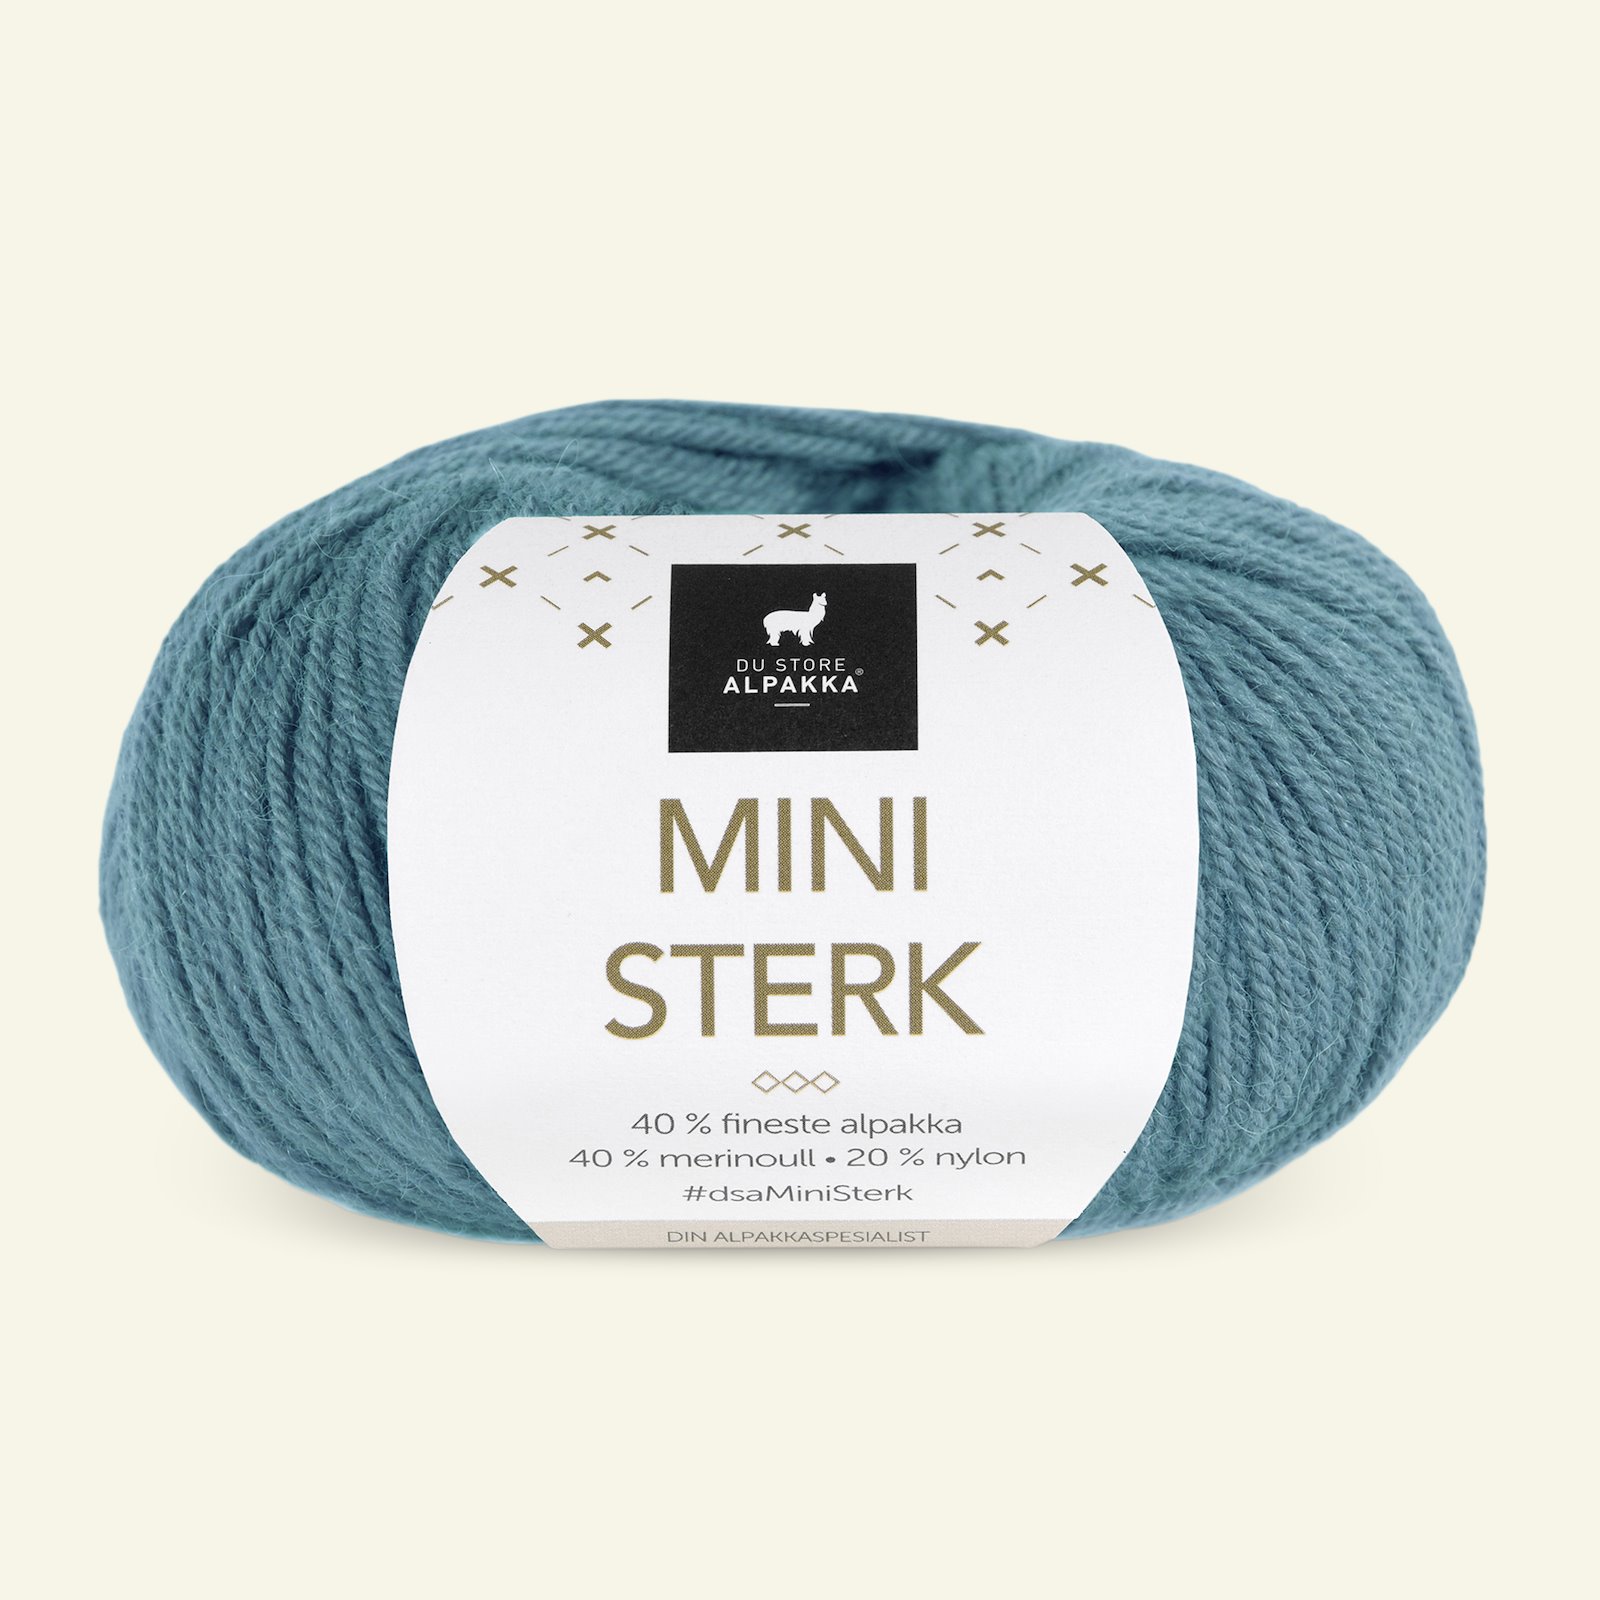 Du Store Alpakka,alpaca merino mixed yarn "Mini Sterk", petrol green (857) 90000639_pack